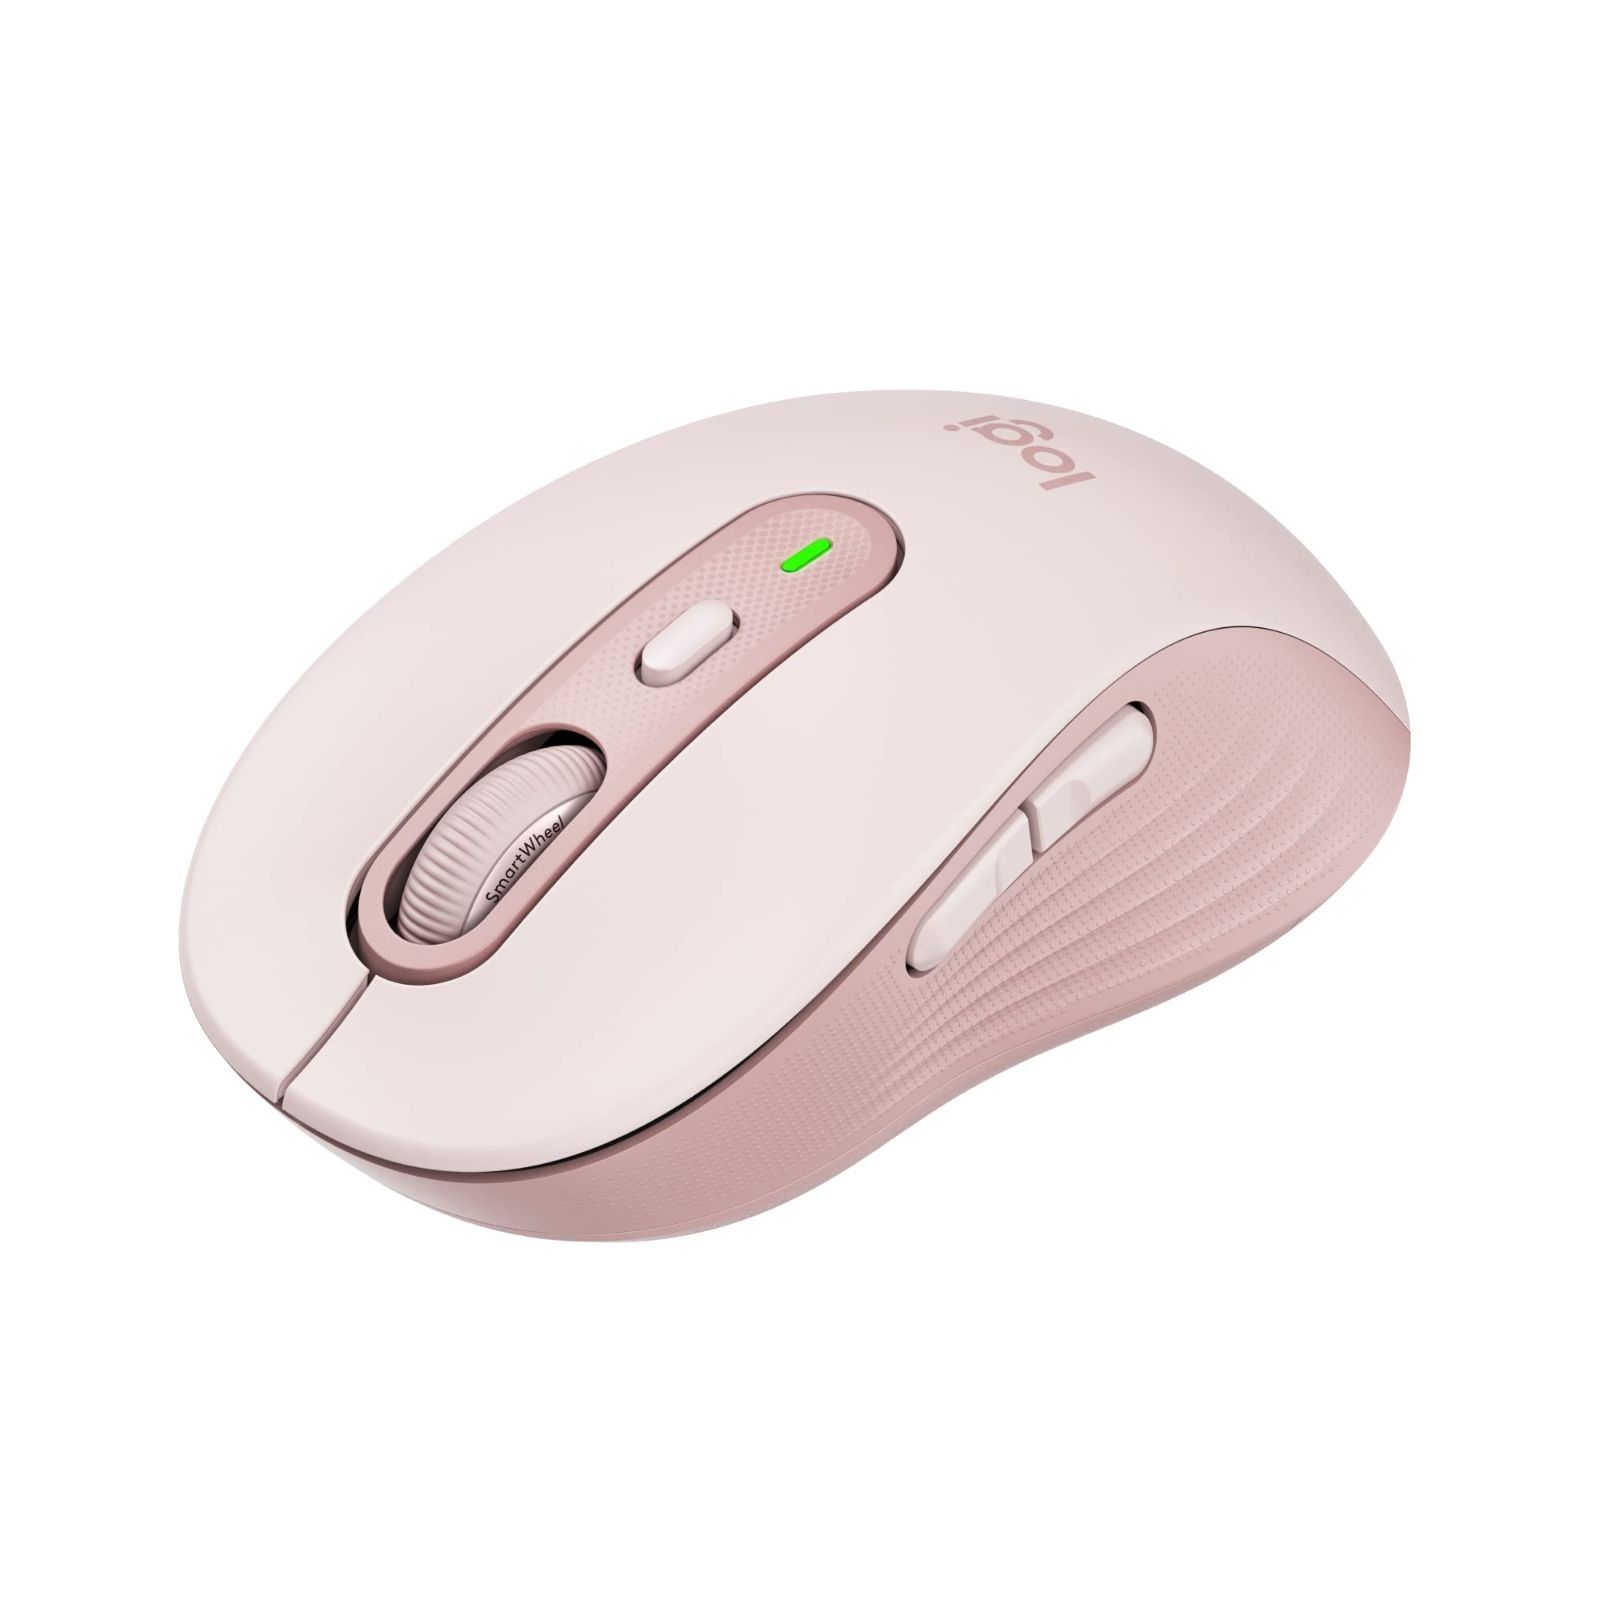  ワイヤレスマウス bluetooth マウス ワイヤレス 静音 無線マウス 薄型 軽量 充電式 7色ライ付 無線 USB パソコン PC 光学式 マウス 省エネルギー 高効率 電池不要 省エネルギー Mac Windows surface Microsoft Proに対応 コンパクト 新生活 オフィス 送料無料